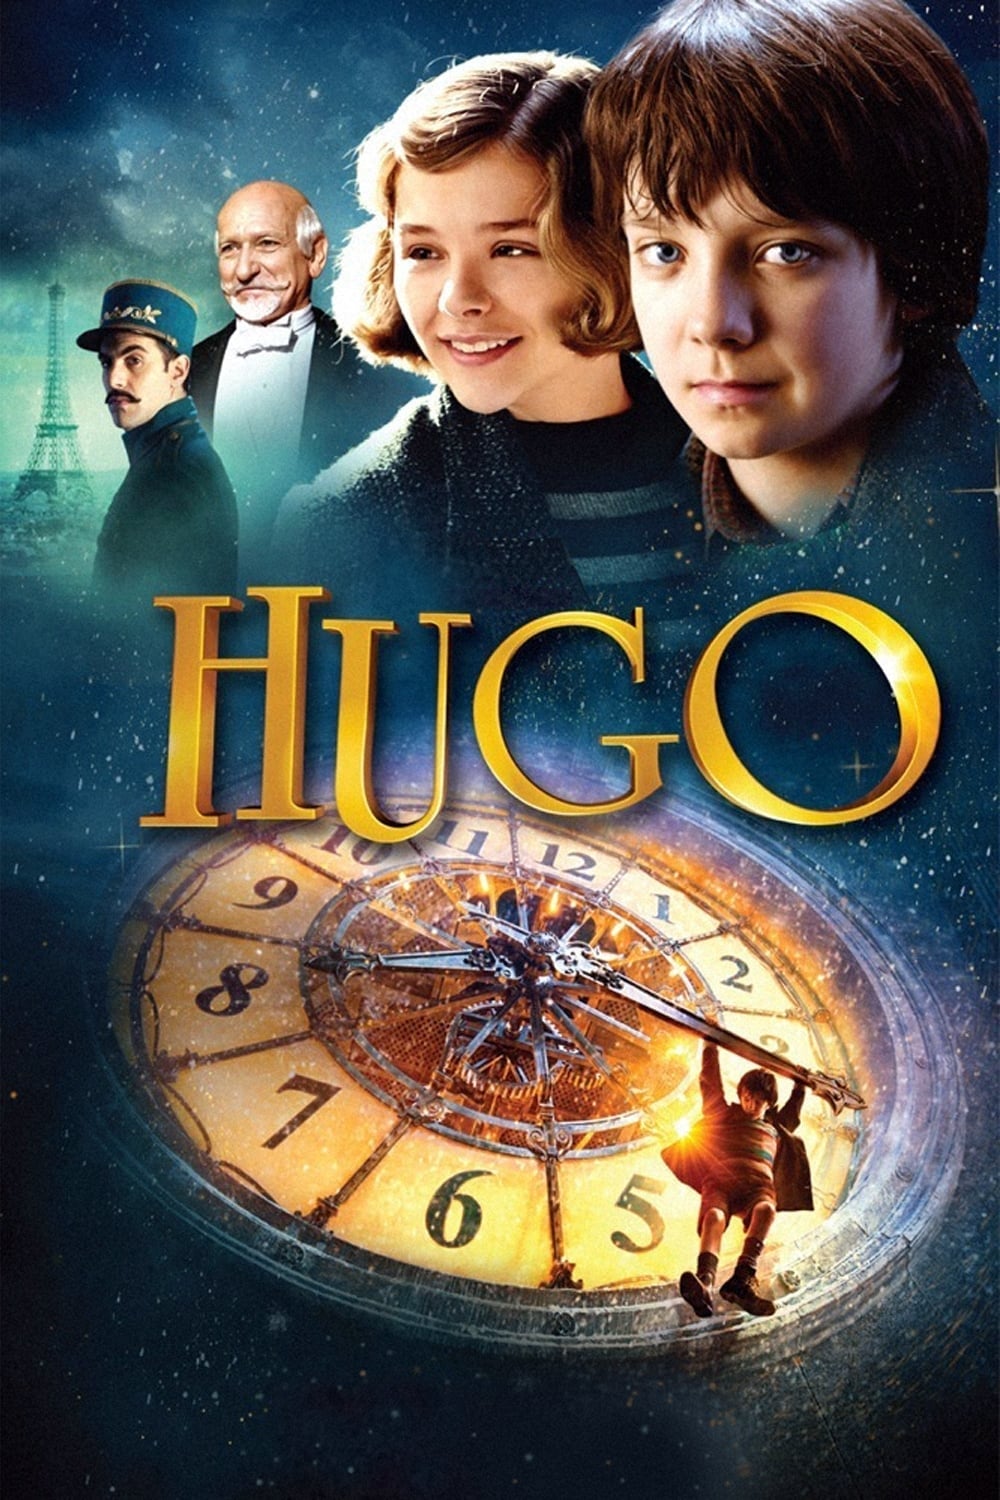 La invención de Hugo